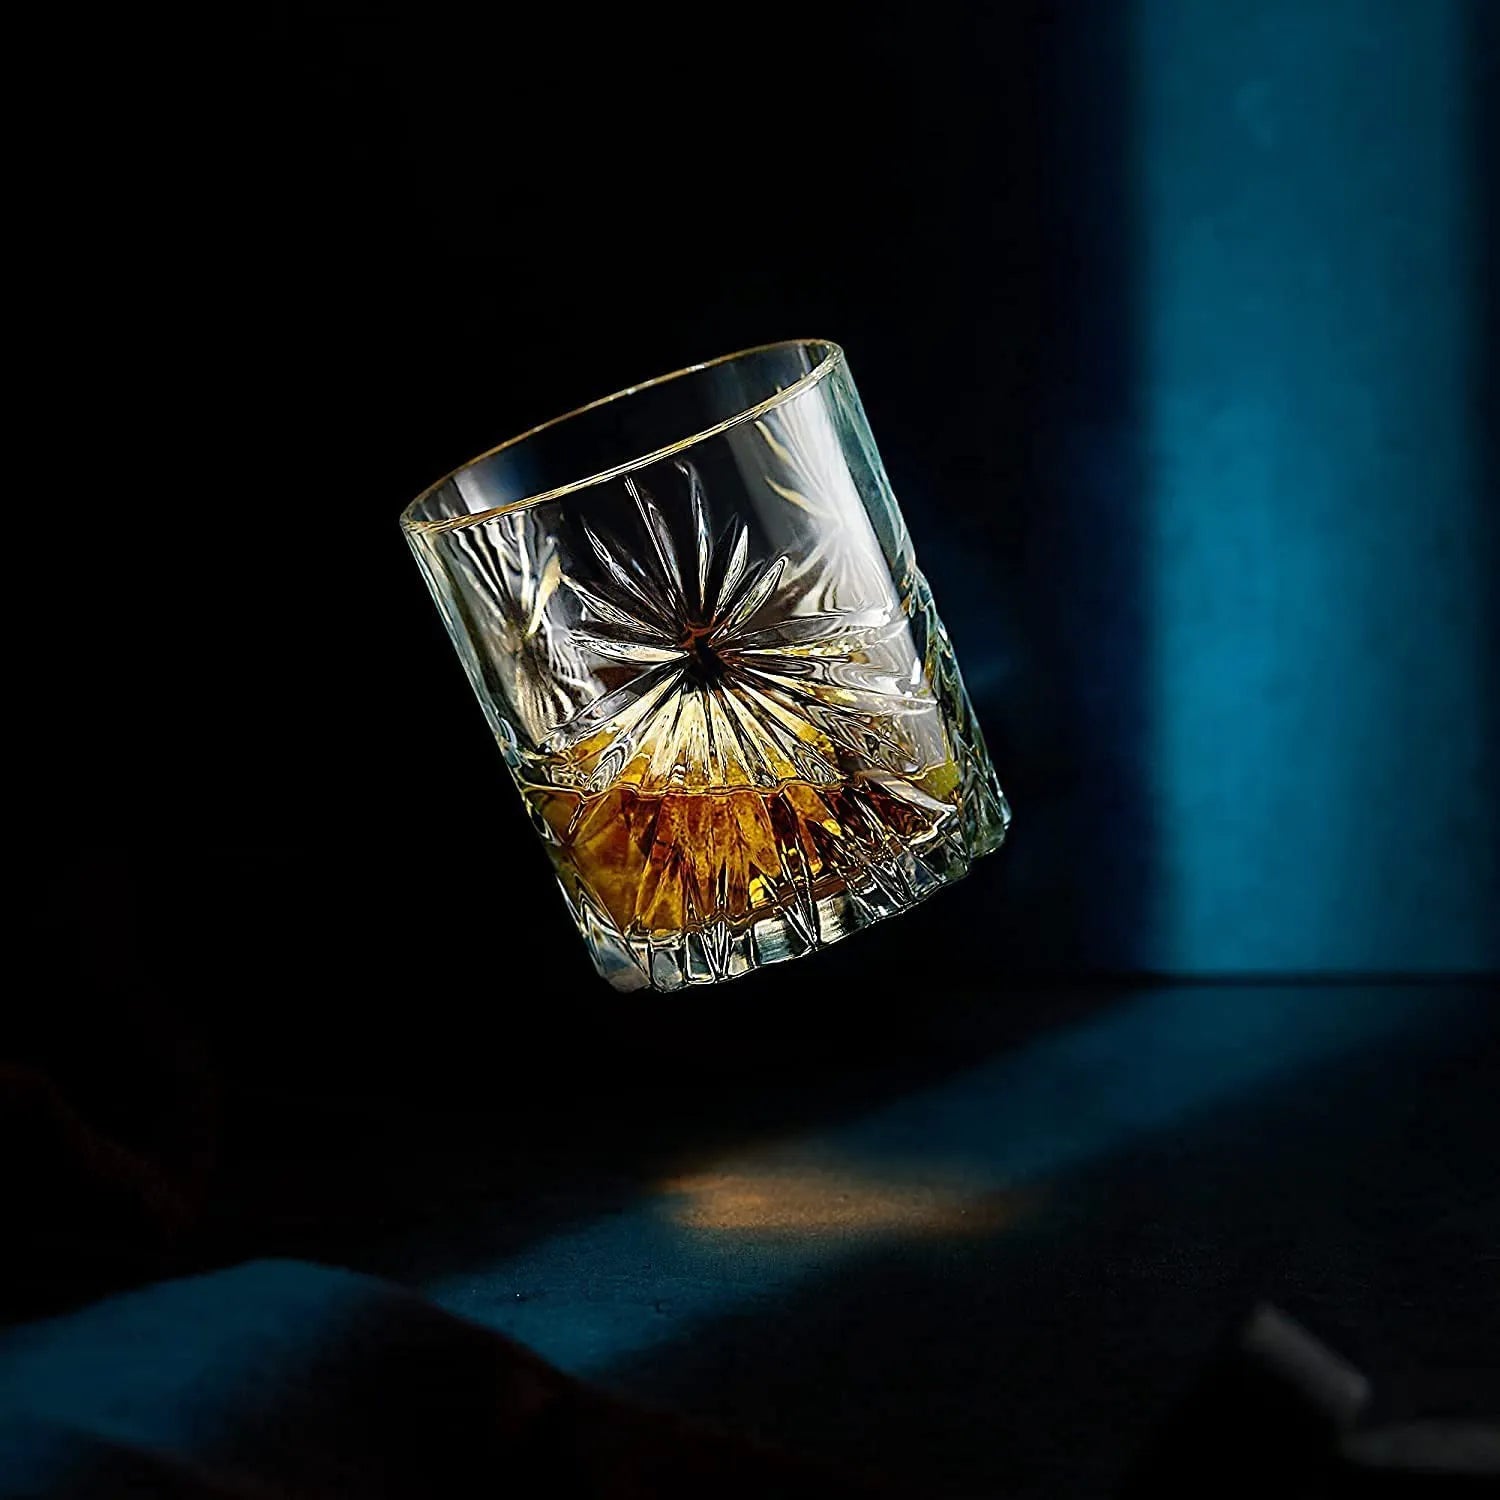 Soleil Whiskyglas vor blauem Hintergrund, fällt gerade zu Boden